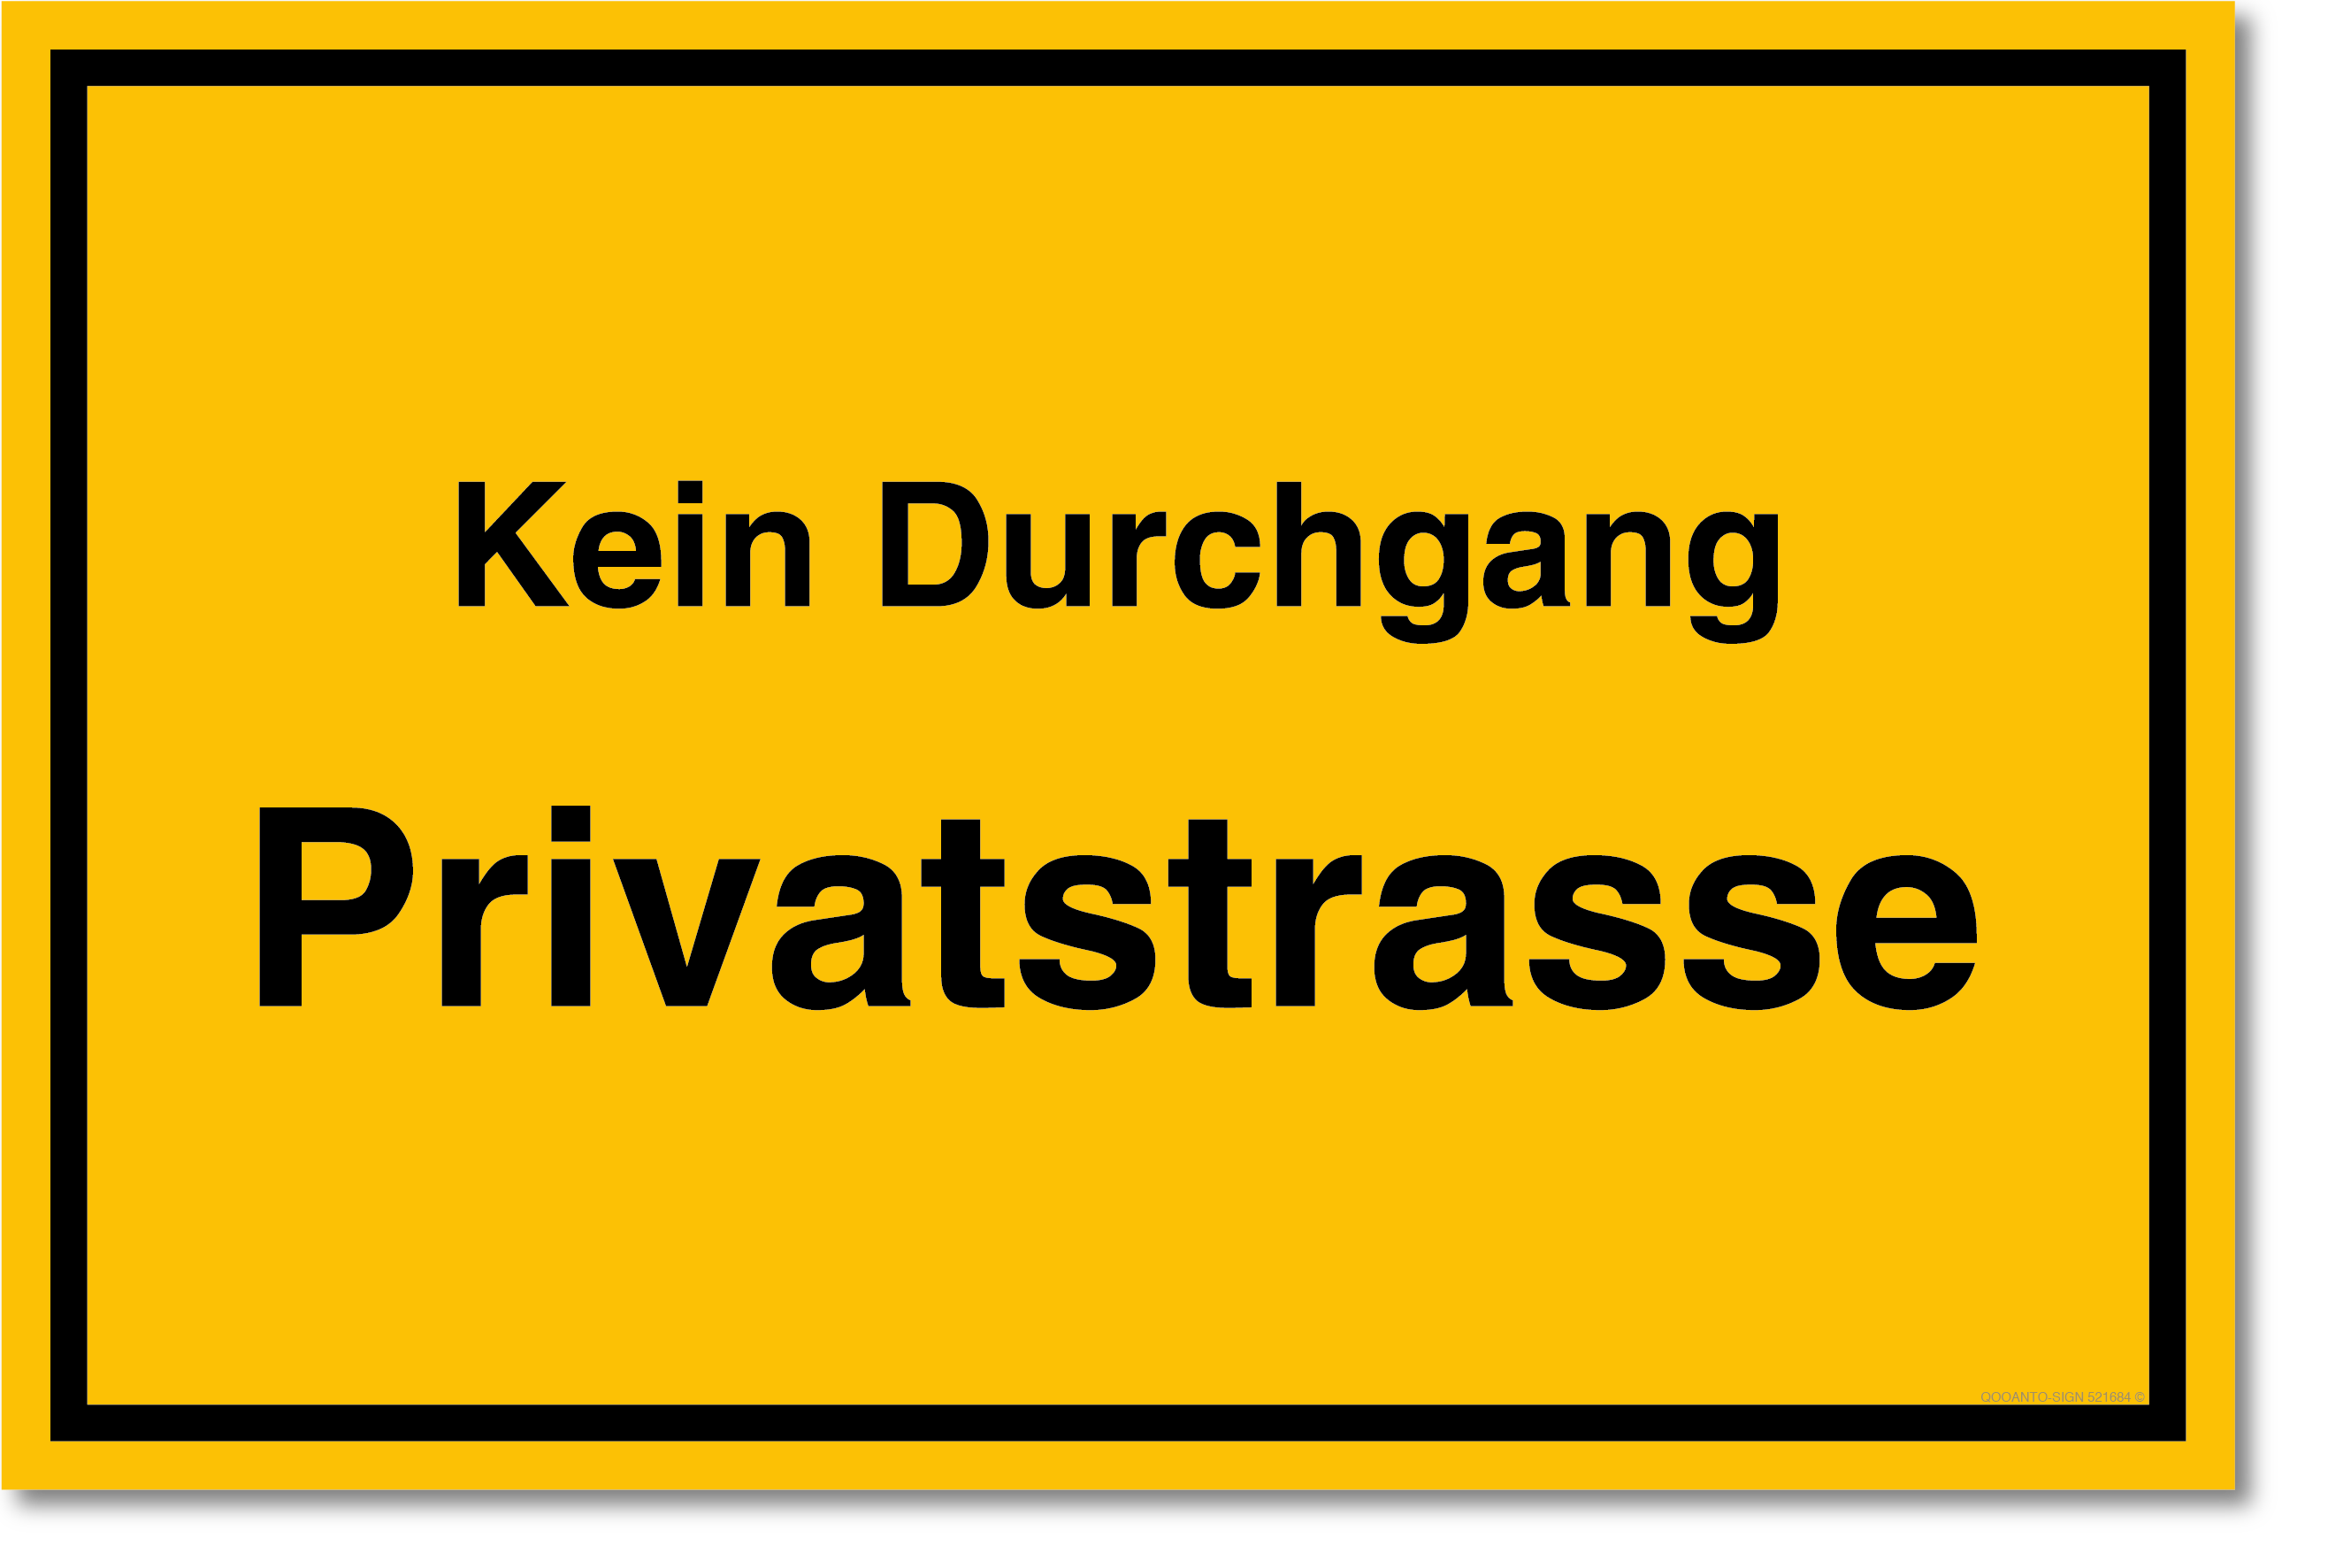 Privatstrasse Schild, Privatstrasse Kein Durchgang, aus Alu-Verbund, mit UV-Schutz